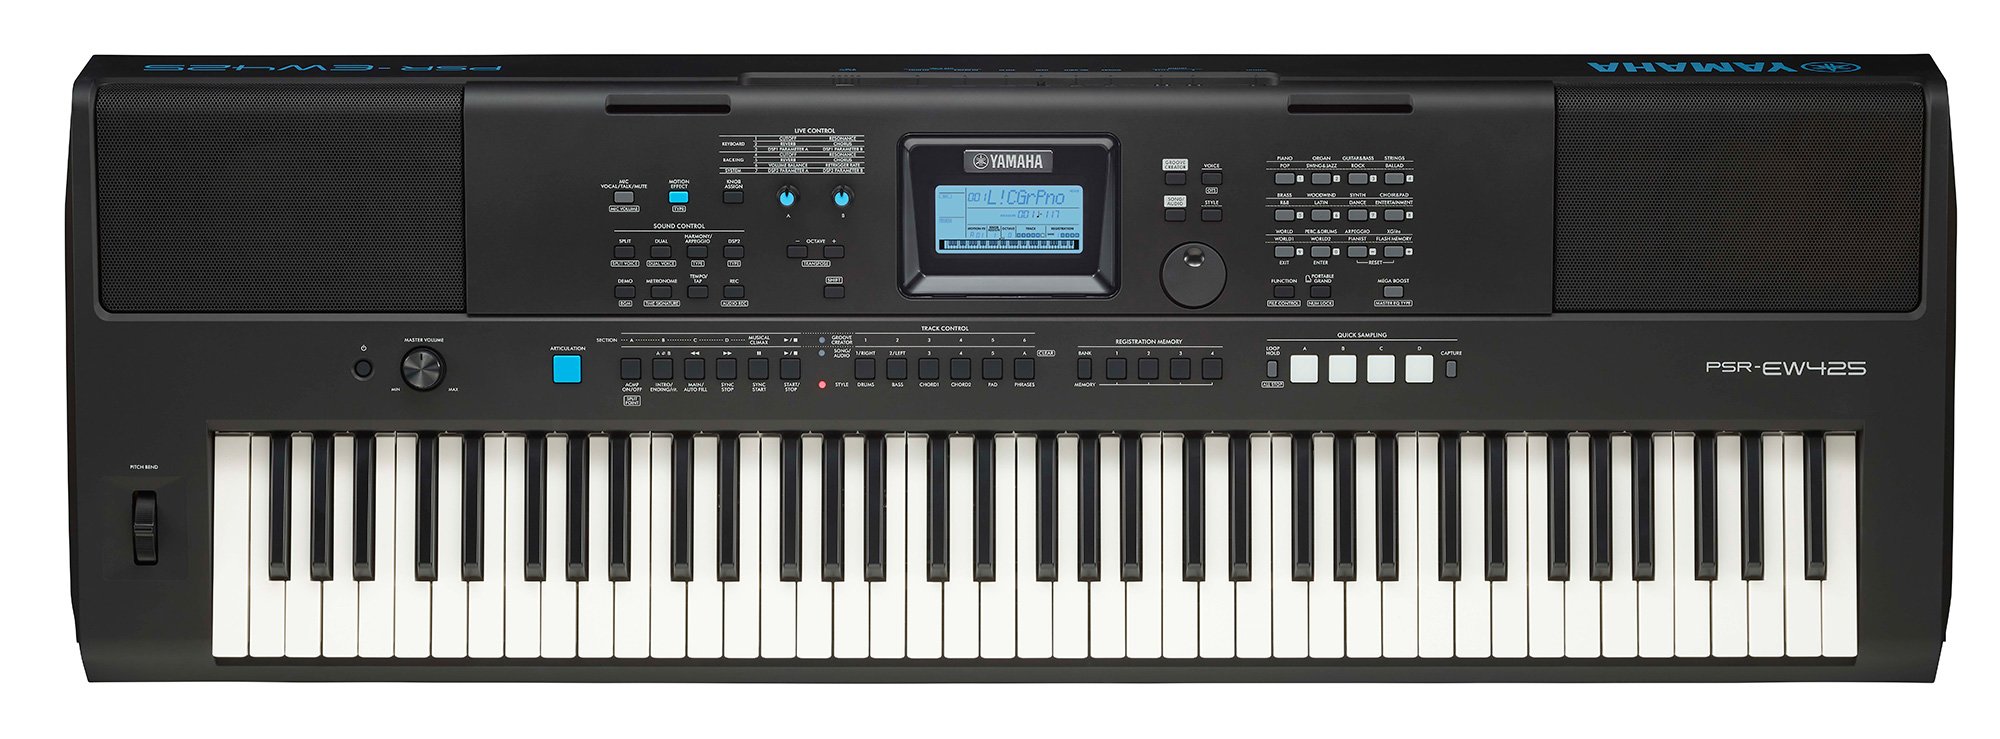 Yamaha PSR-EW425 Keyboard (Sort)